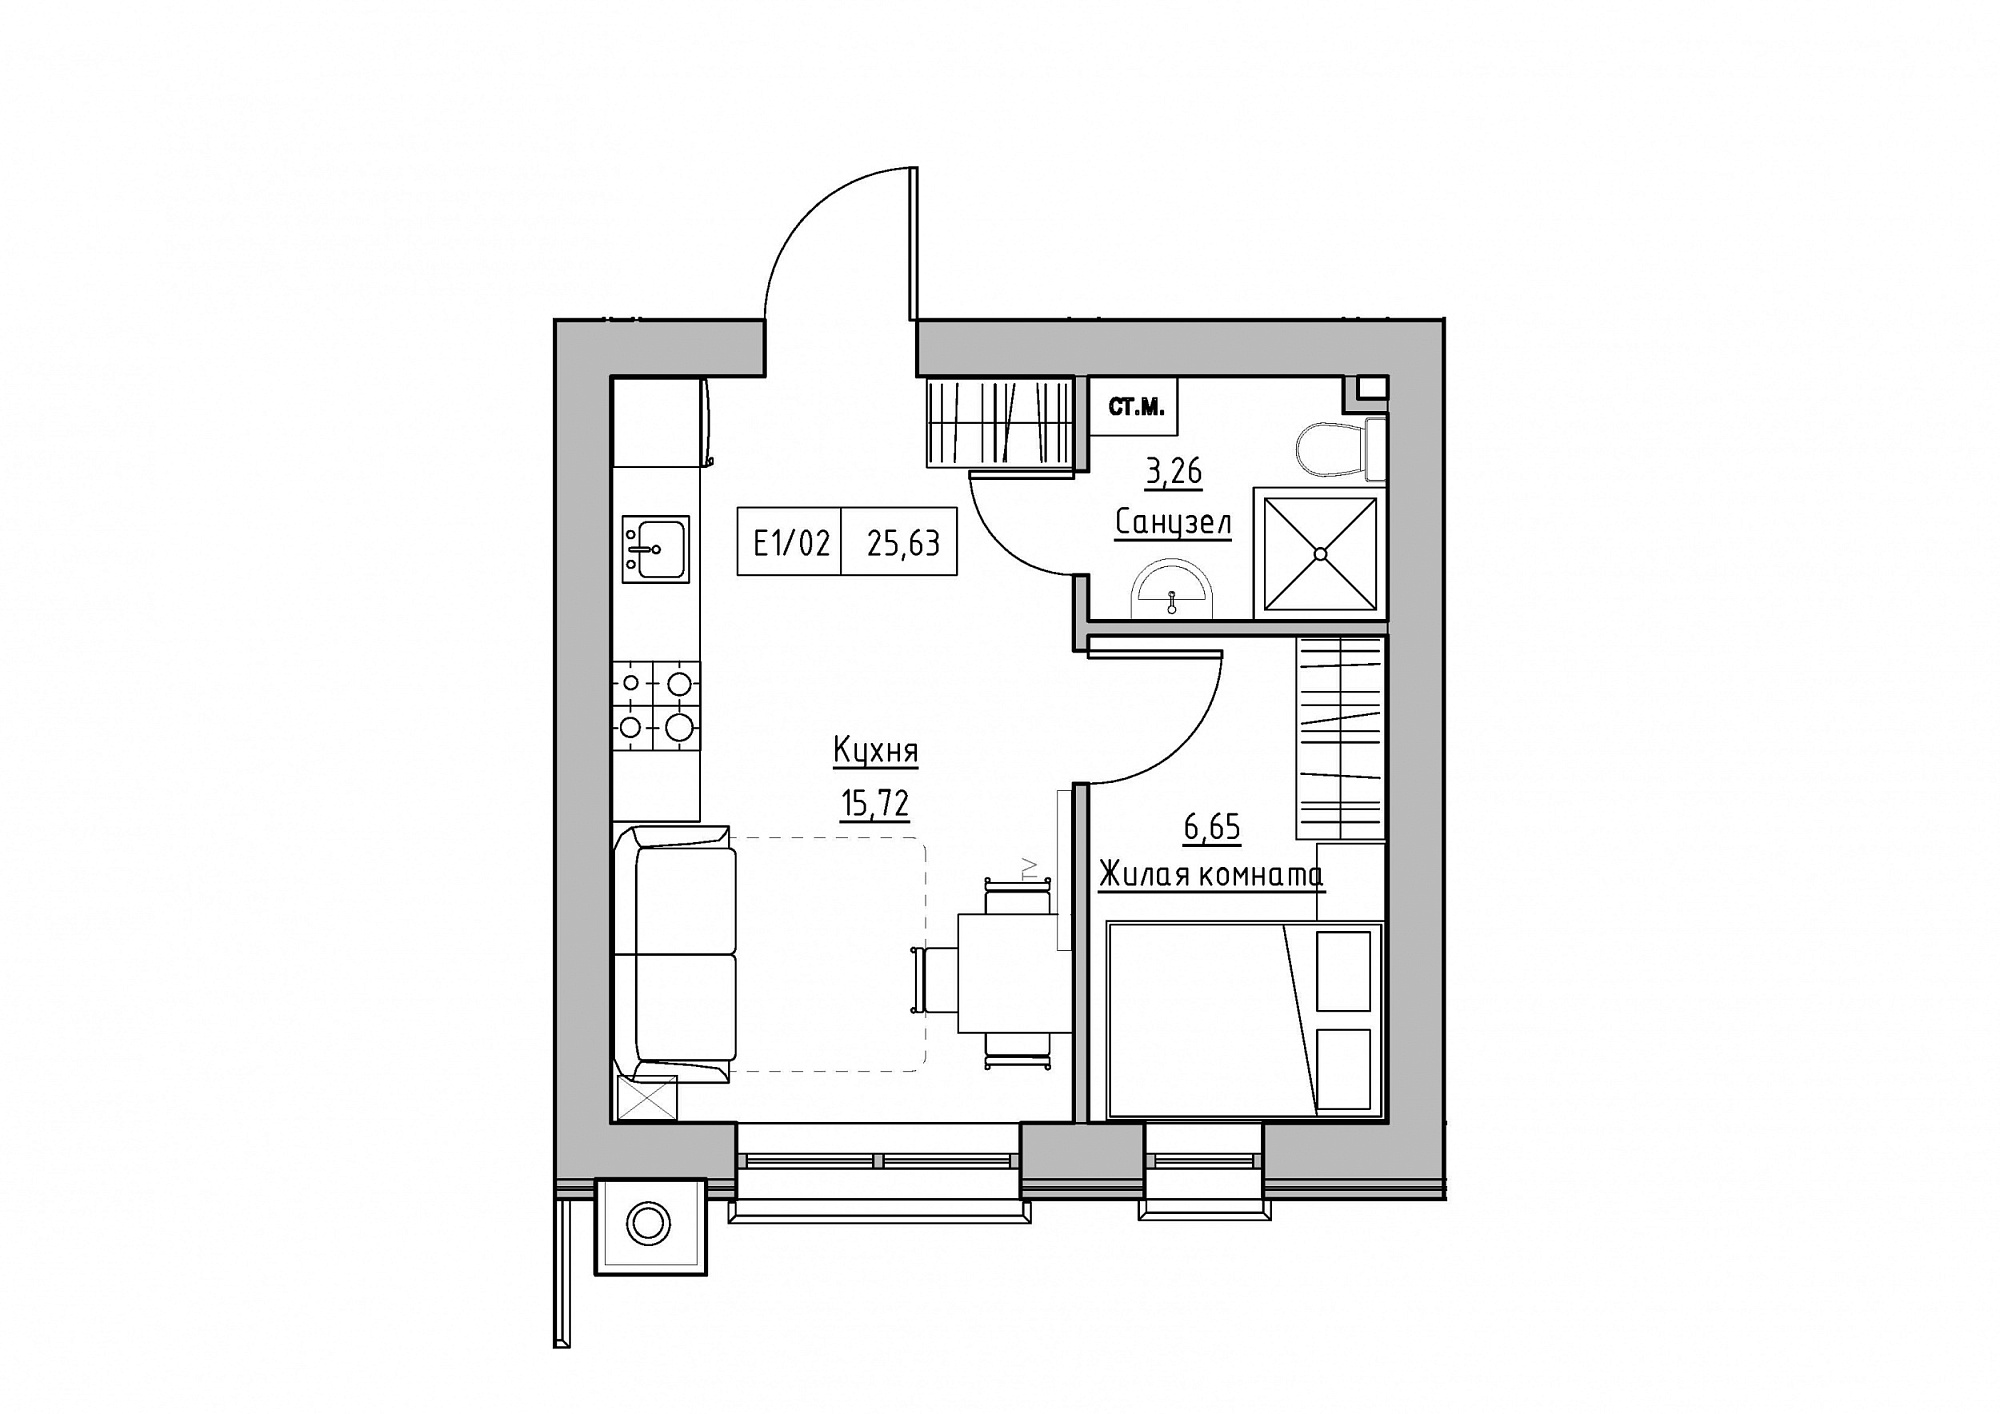 Планировка 1-к квартира площей 25.63м2, KS-012-04/0004.